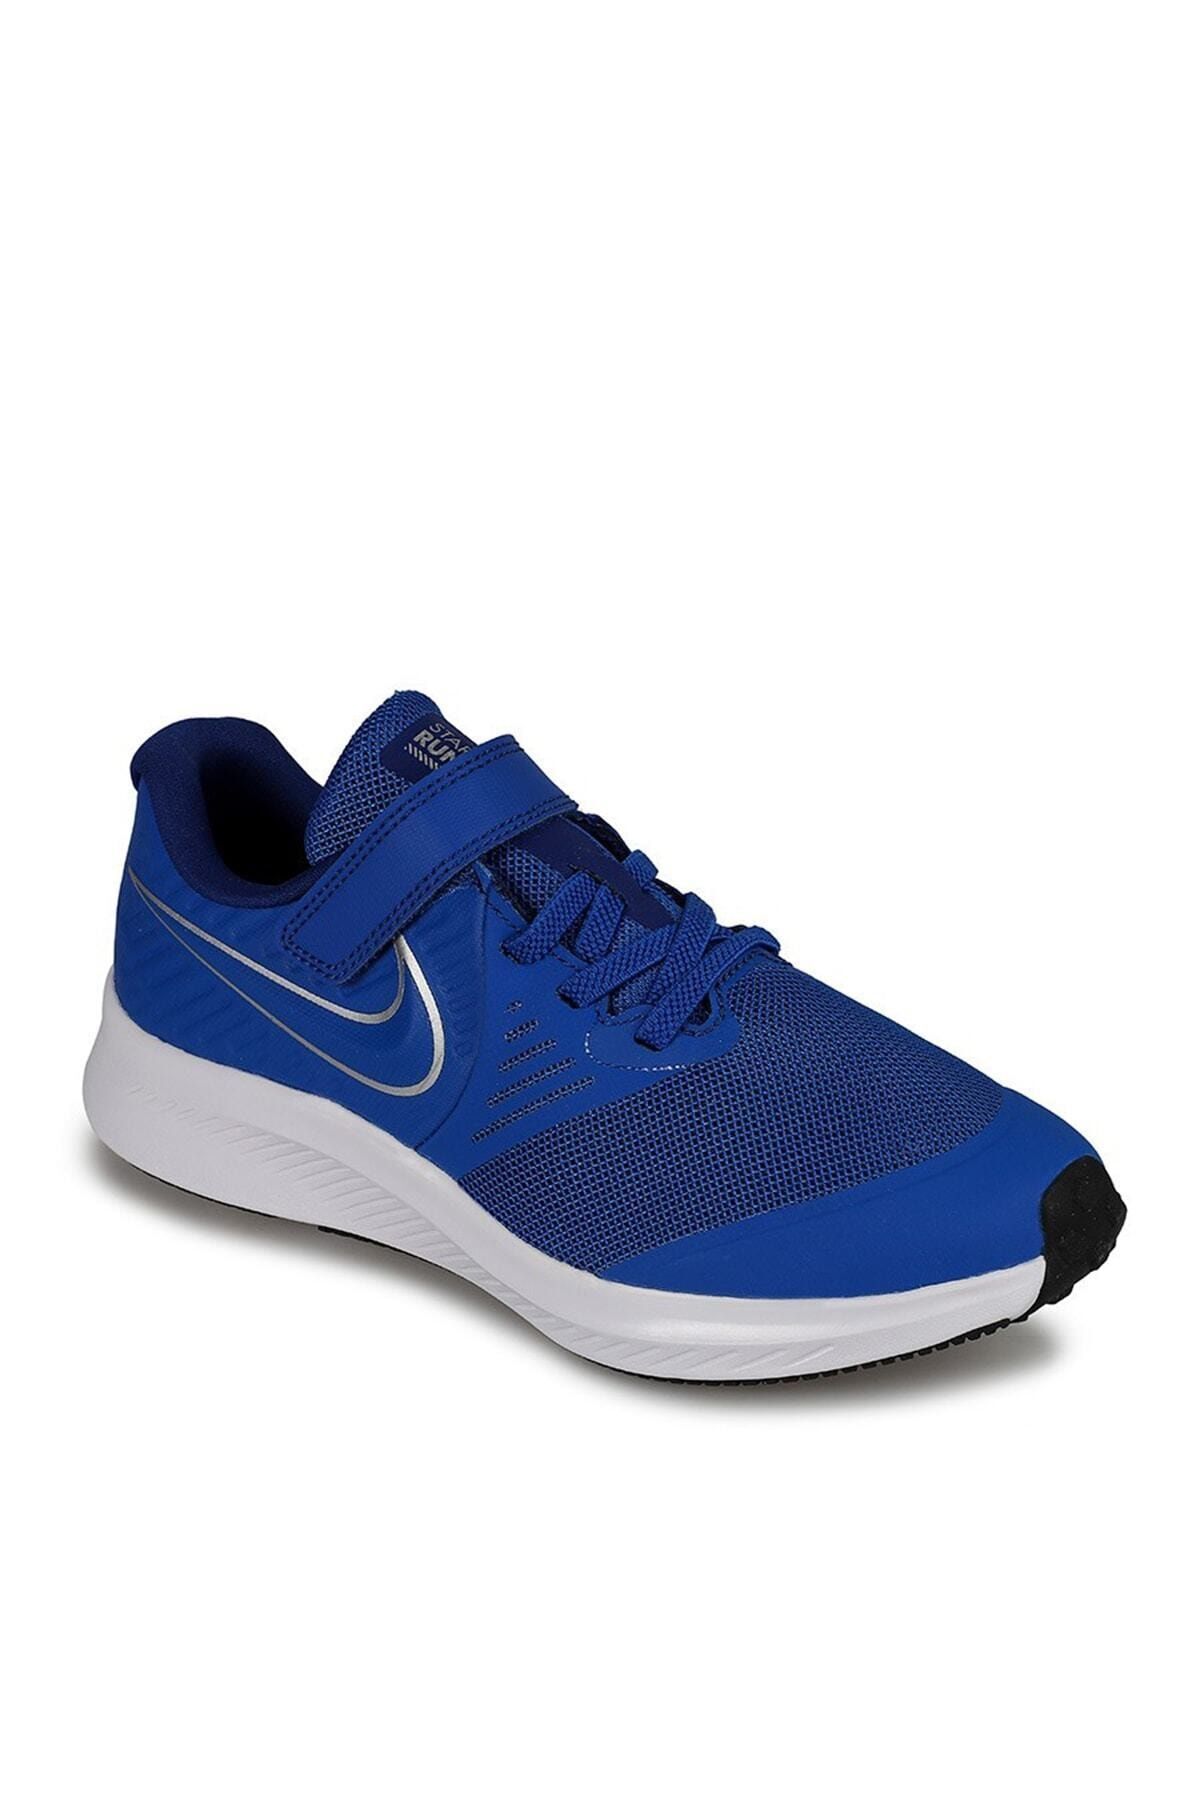 Nike Nike AT1801-400 Star Runner Küçük Çocuk Koşu Ayakkabısı